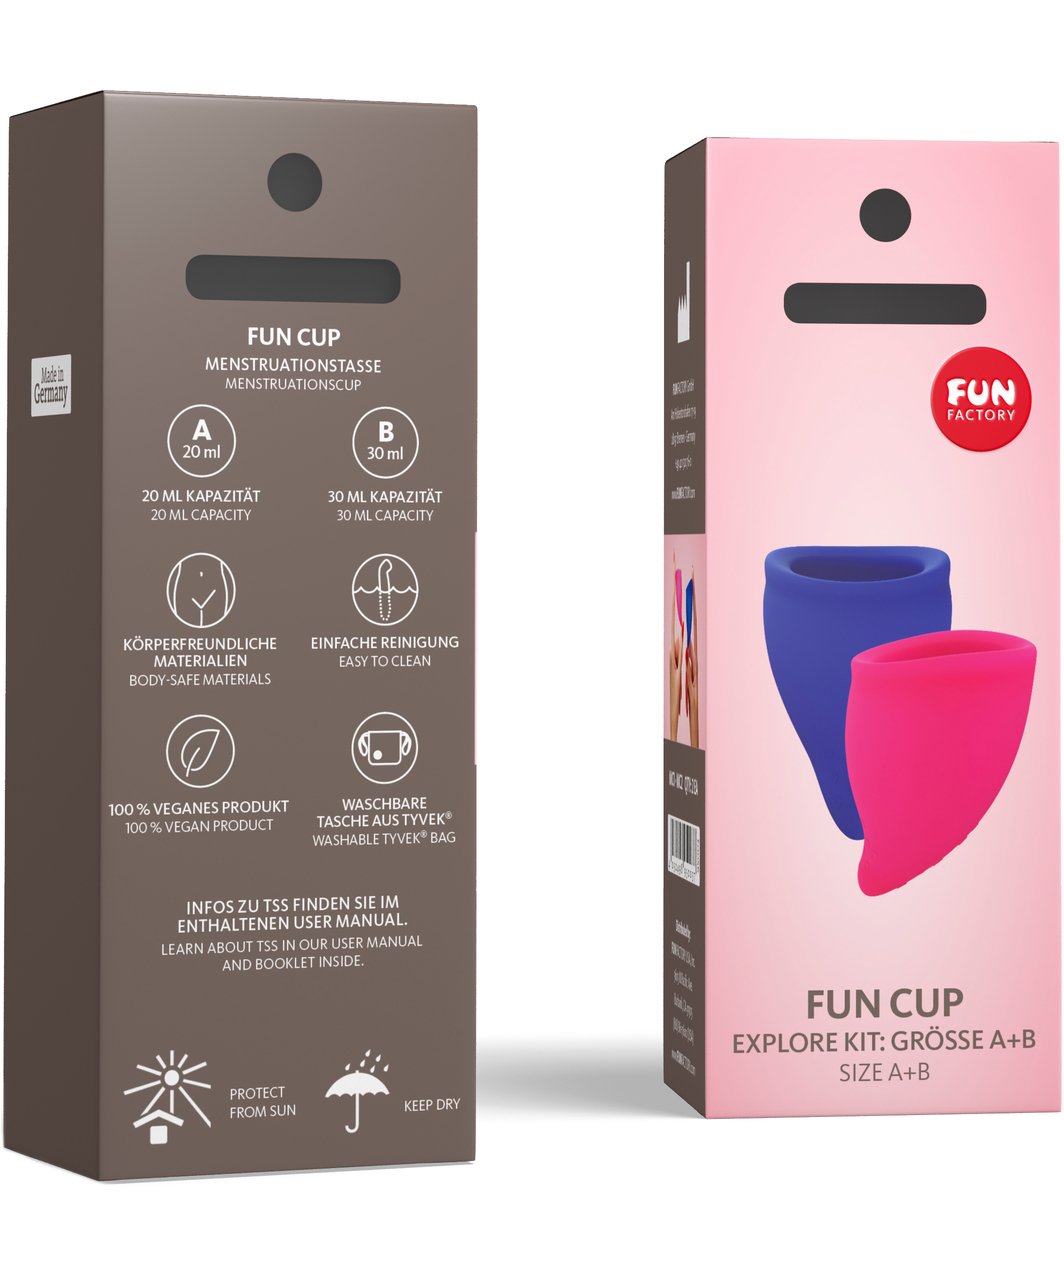 Fun Factory Fun Cup Kit